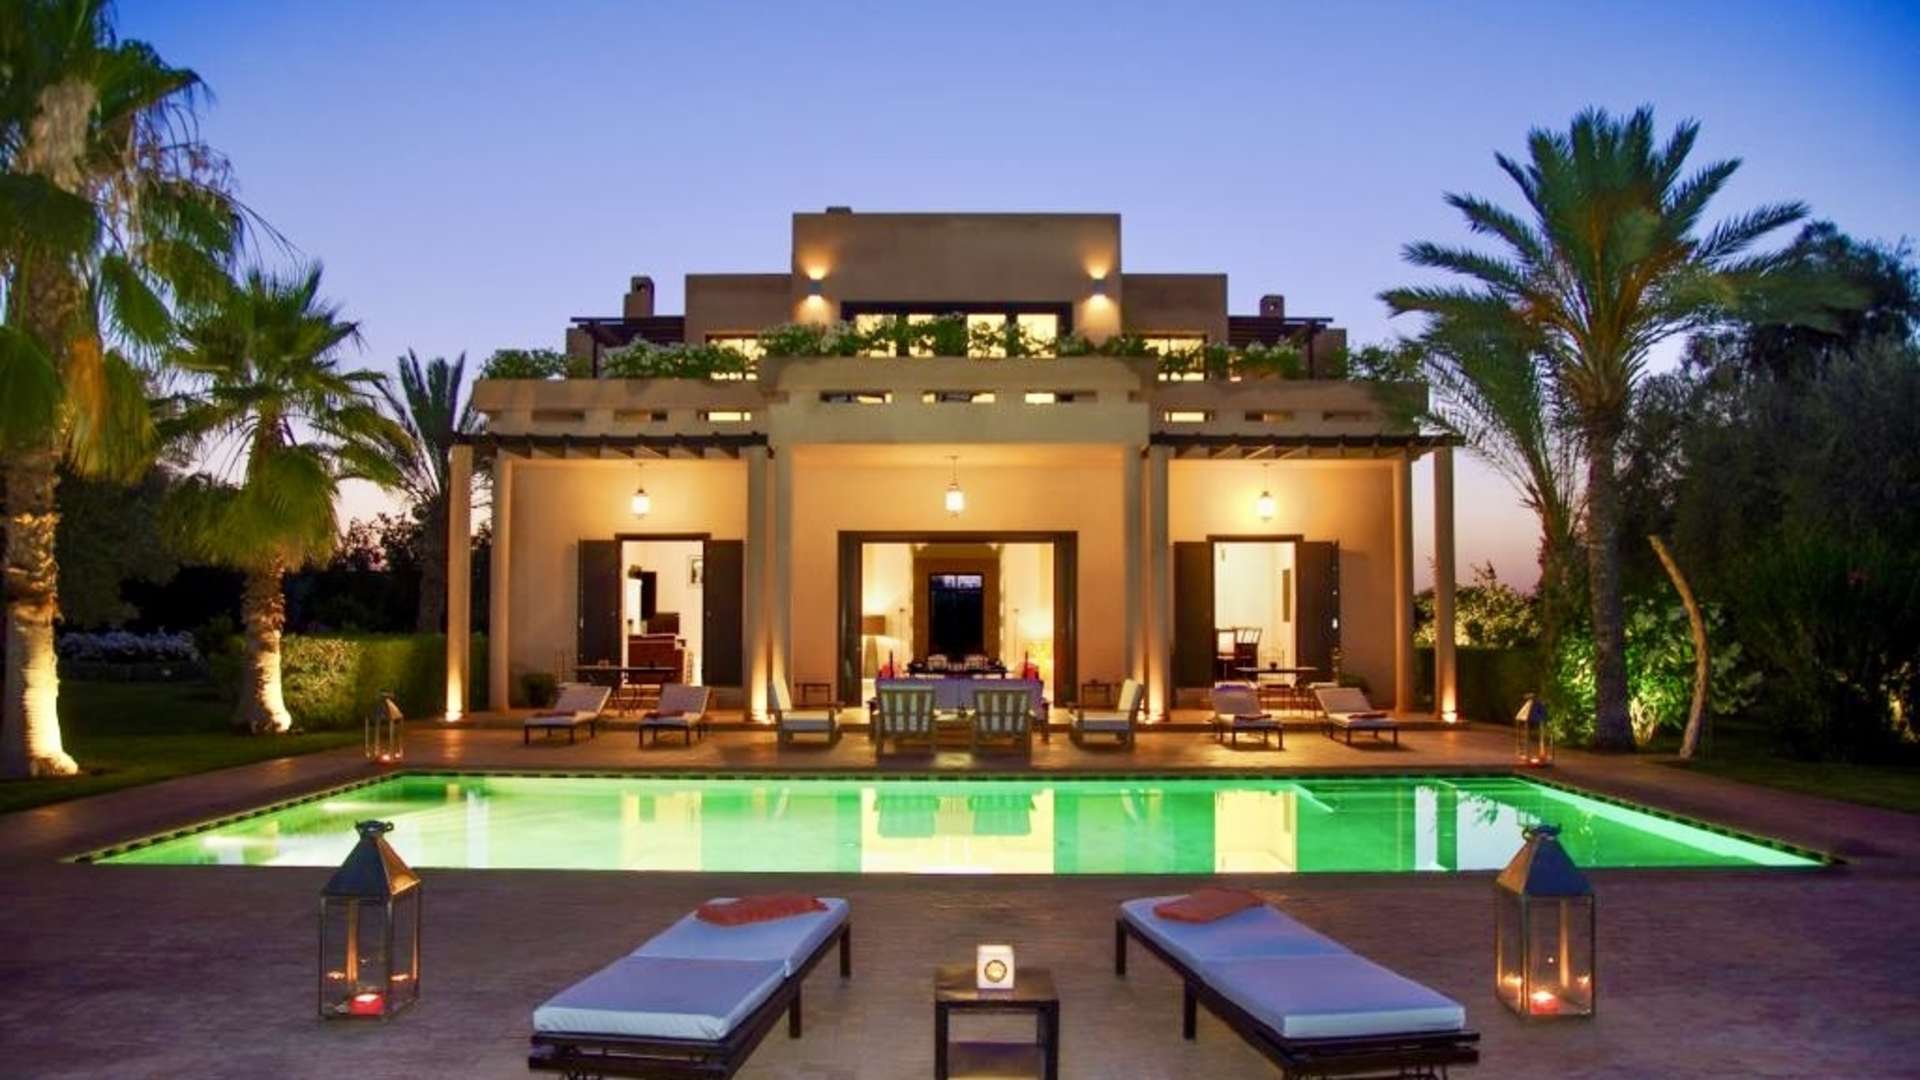 Location de vacances,Villa,Magnifique villa de vacances de 5 chambres avec piscine et jardin privés à 15min. du centre de Marrakech,Marrakech,Route de l'Ourika